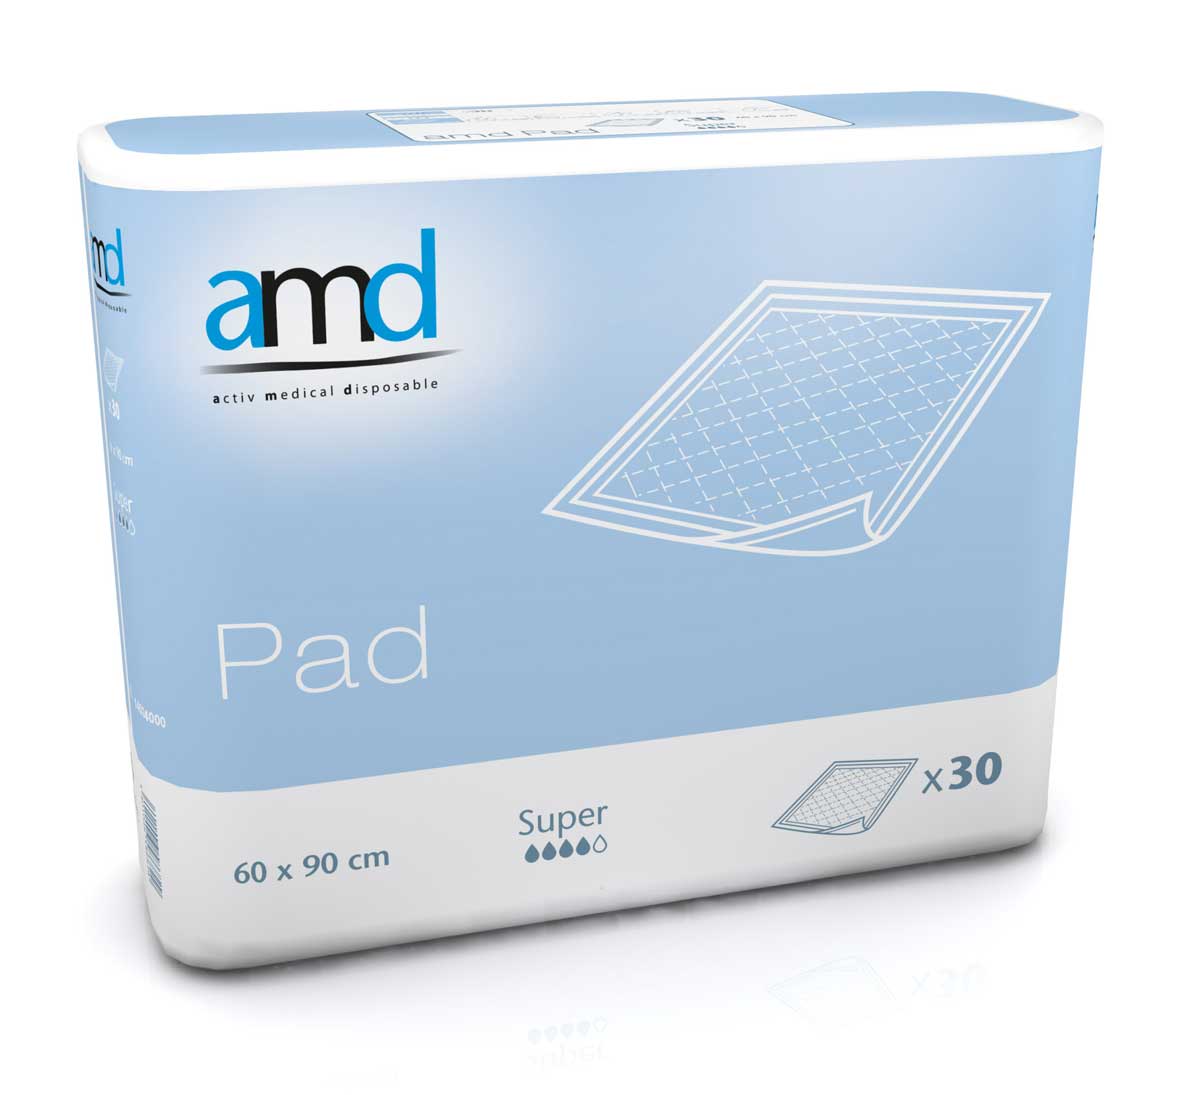 AMD PAD - Inkontinenzauflage - SUPER - 60 x 90cm - 4x30 St. Karton